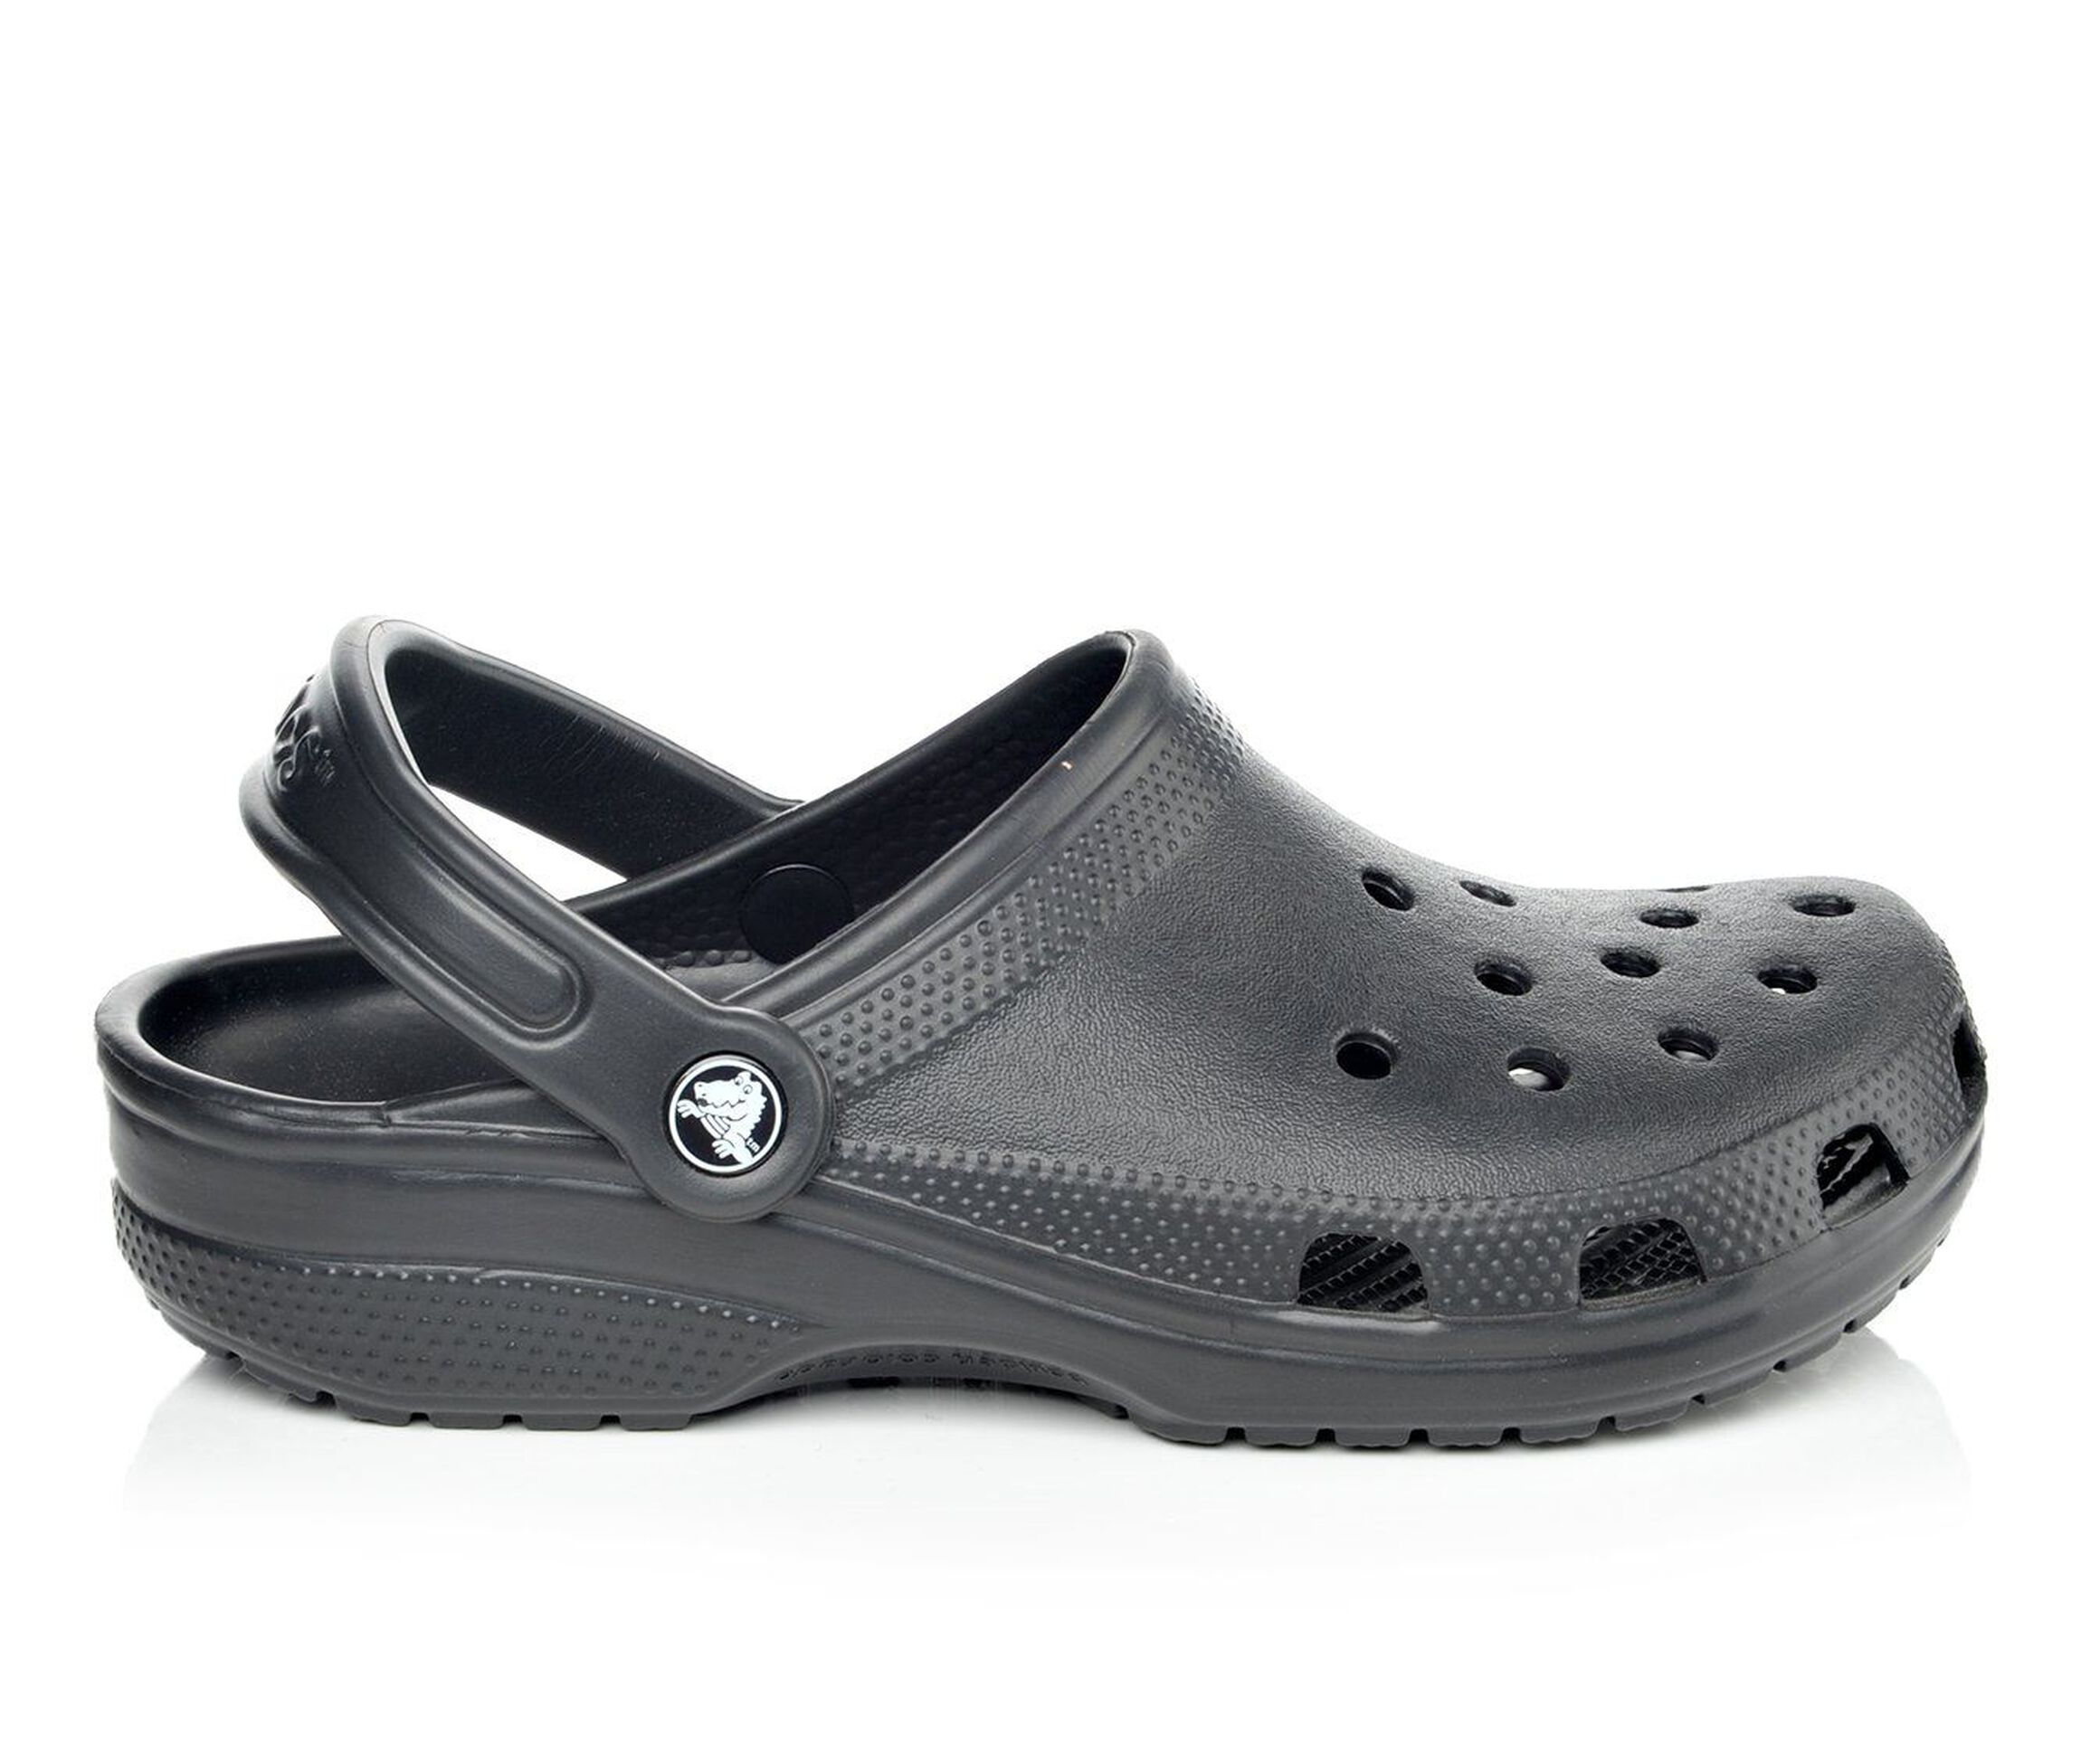 Men's Crocs Shoes | Shoe Carnival